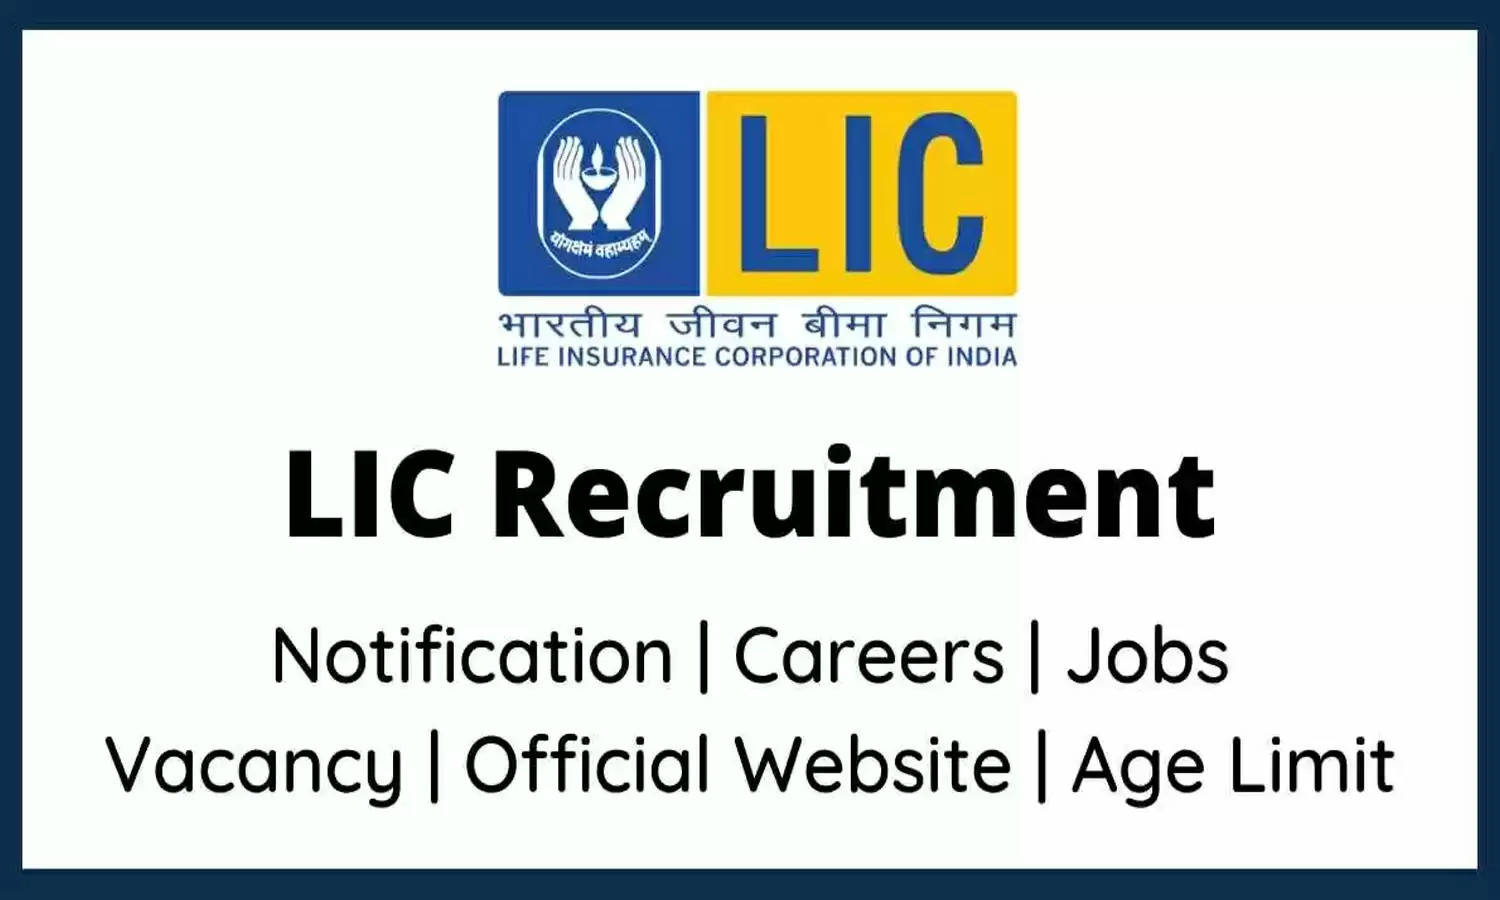 LIC ने डिग्री पास के लिए सहायक के पदों पर भर्ती का नोटिस किया जारी, इन स्टेप को फॉलो करके घर से करें आवेदन